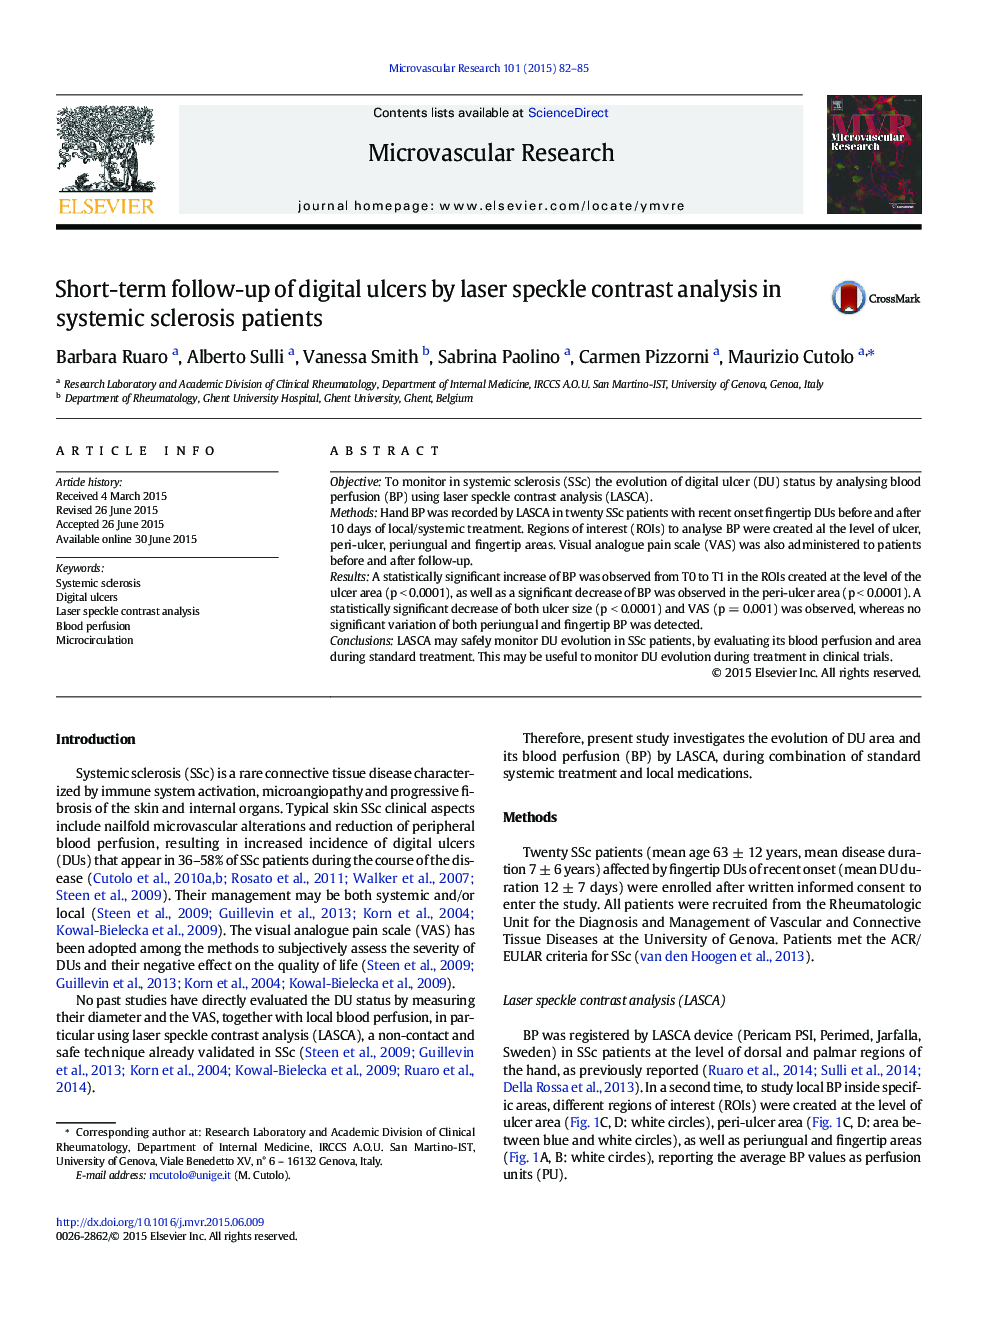 پیگیری کوتاه مدت زخم های دیجیتال توسط آنالیز کنتراست اسپکتروفتگی لیزر در بیماران اسکلروز سیستمیک 